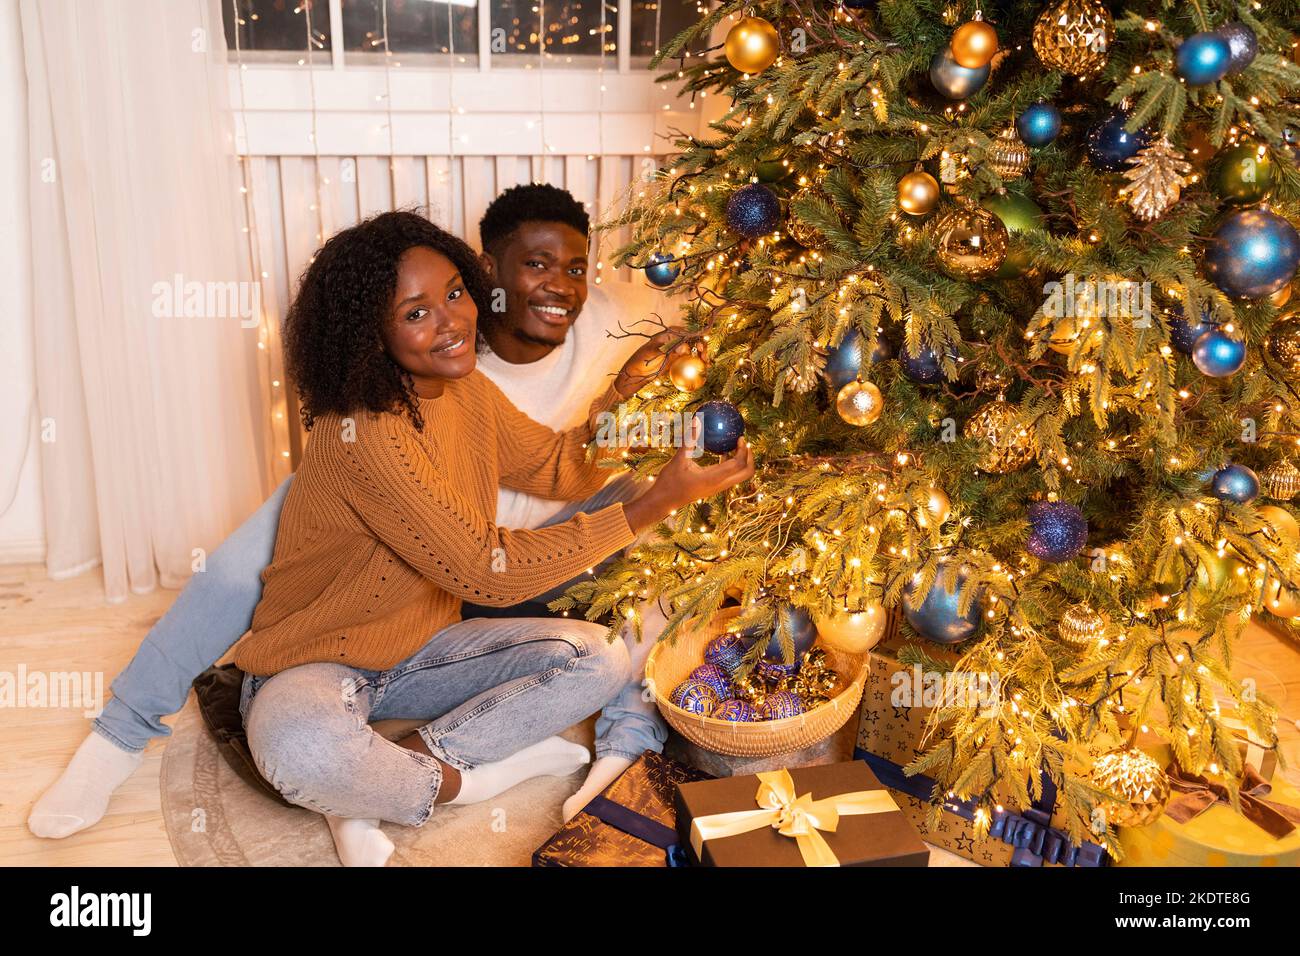 Die junge afroamerikanische Dame und der junge Mann schmücken den Weihnachtsbaum mit Girlanden, Spielzeug im gemütlichen Wohnzimmer Stockfoto